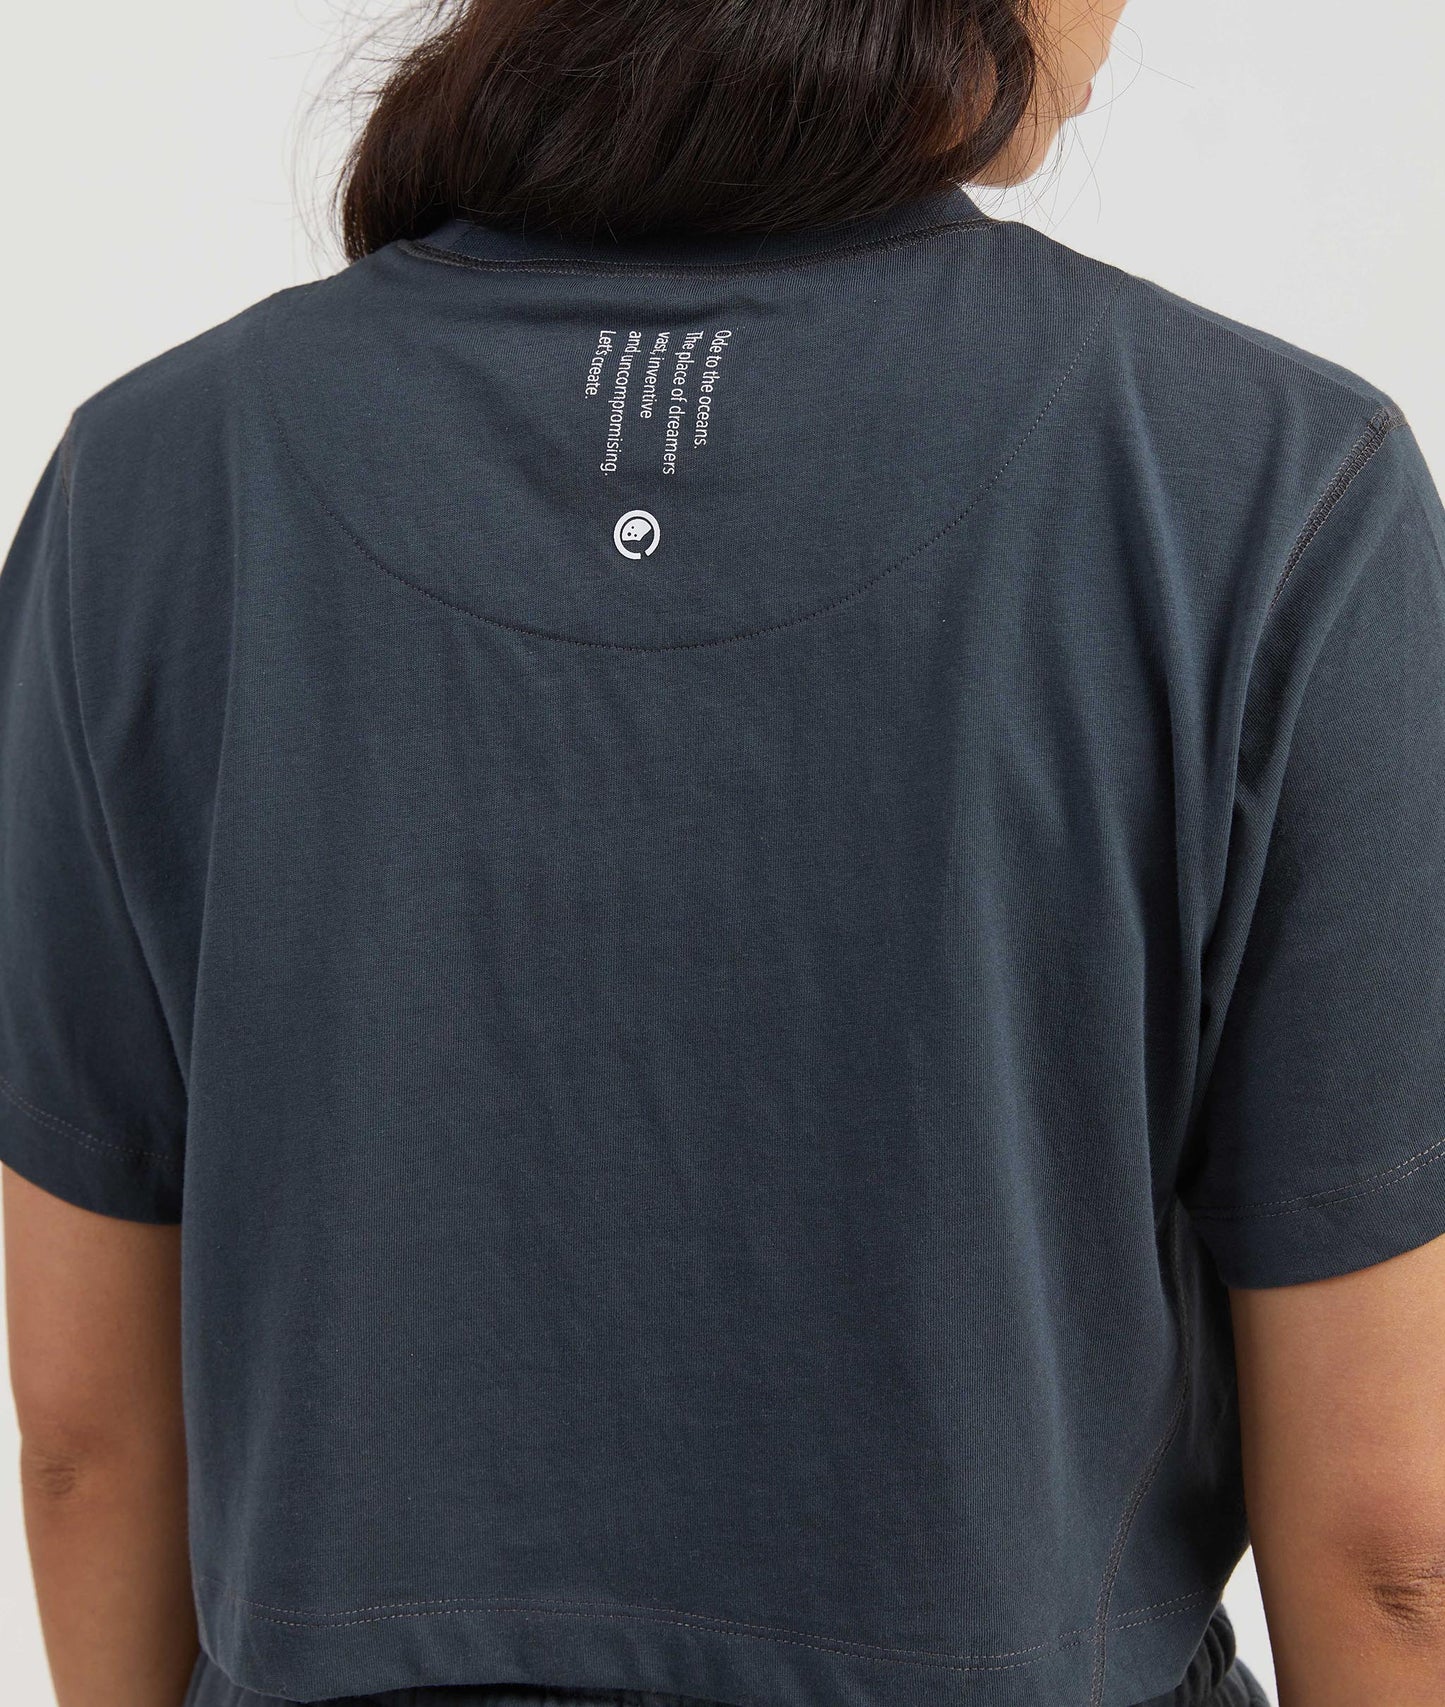 Honey Women's Cropped T-shirt - Charcoal